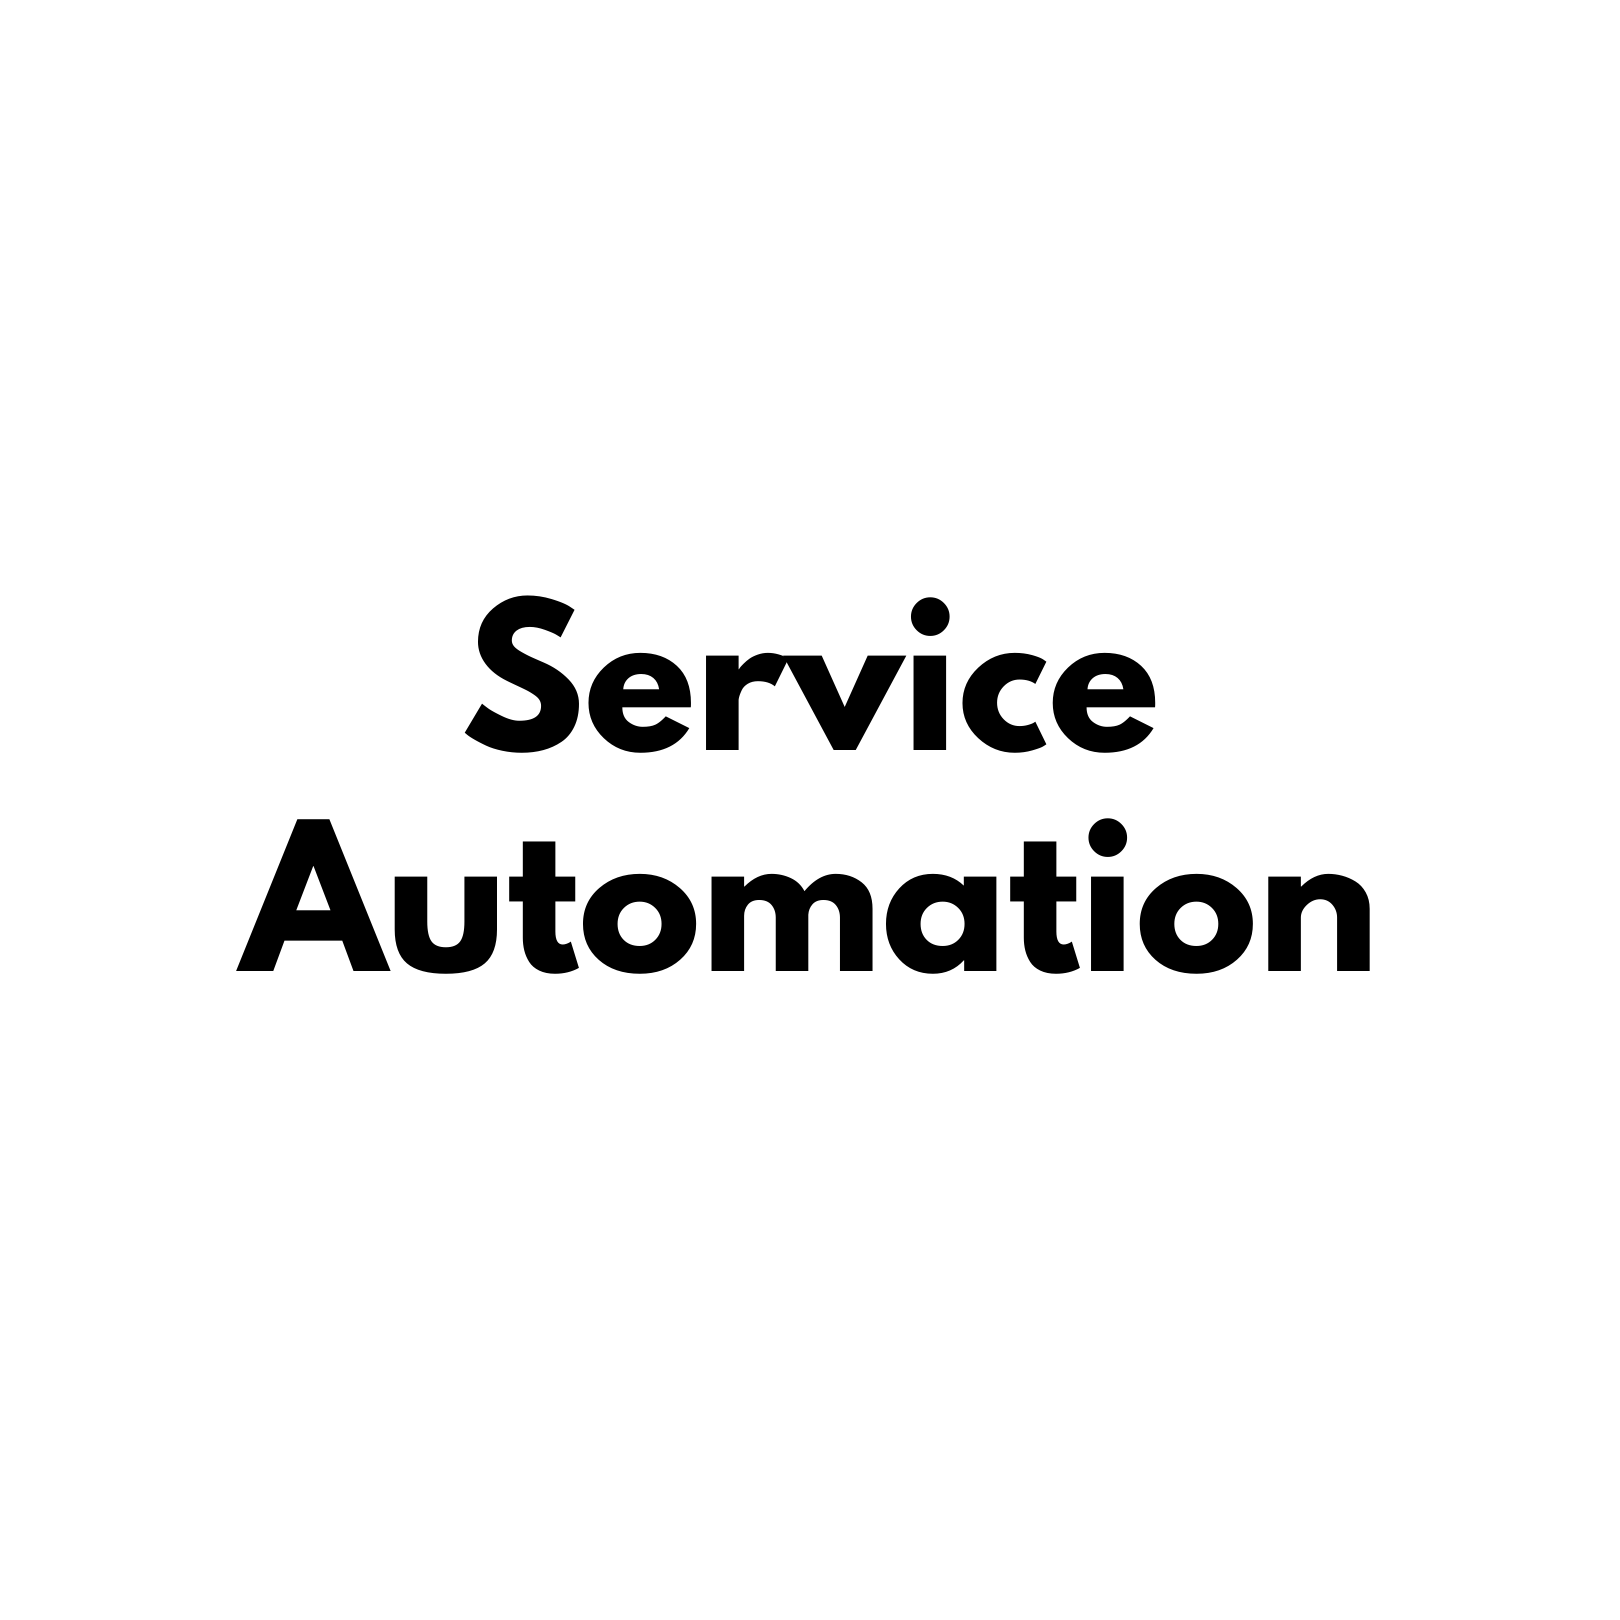 Service Automation